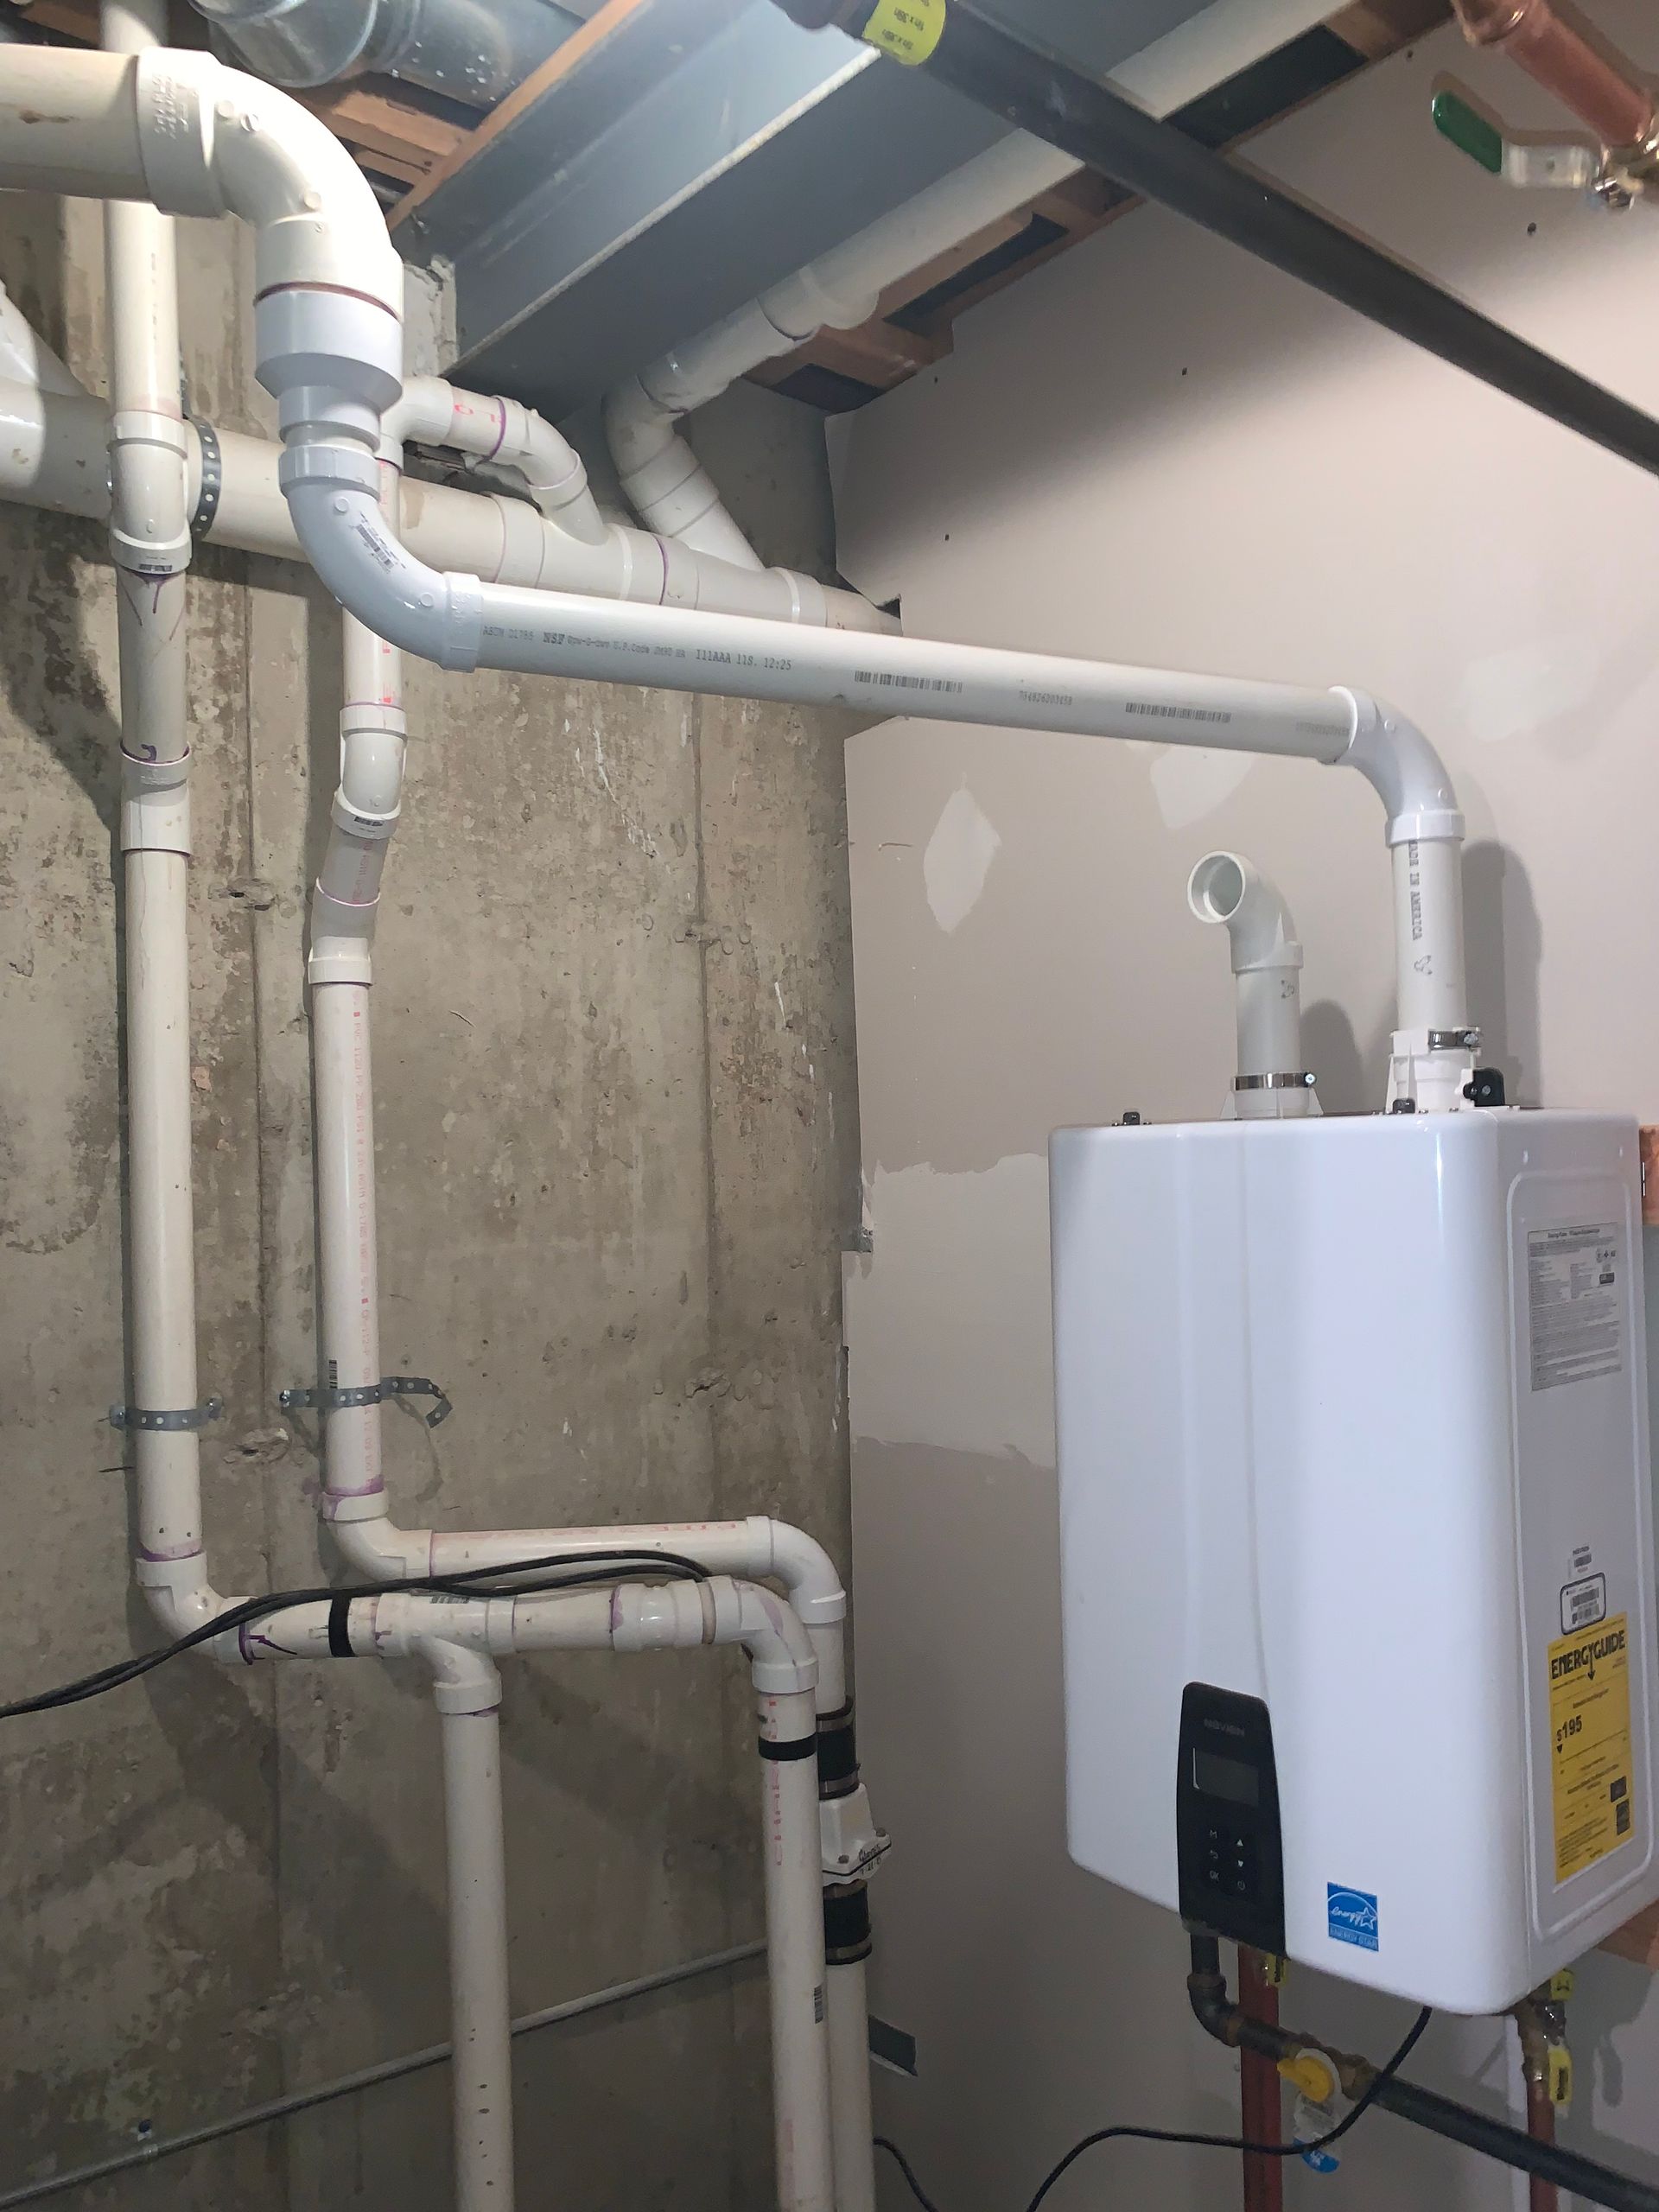 Berkeley Tankless Water Heater Installation in Basement